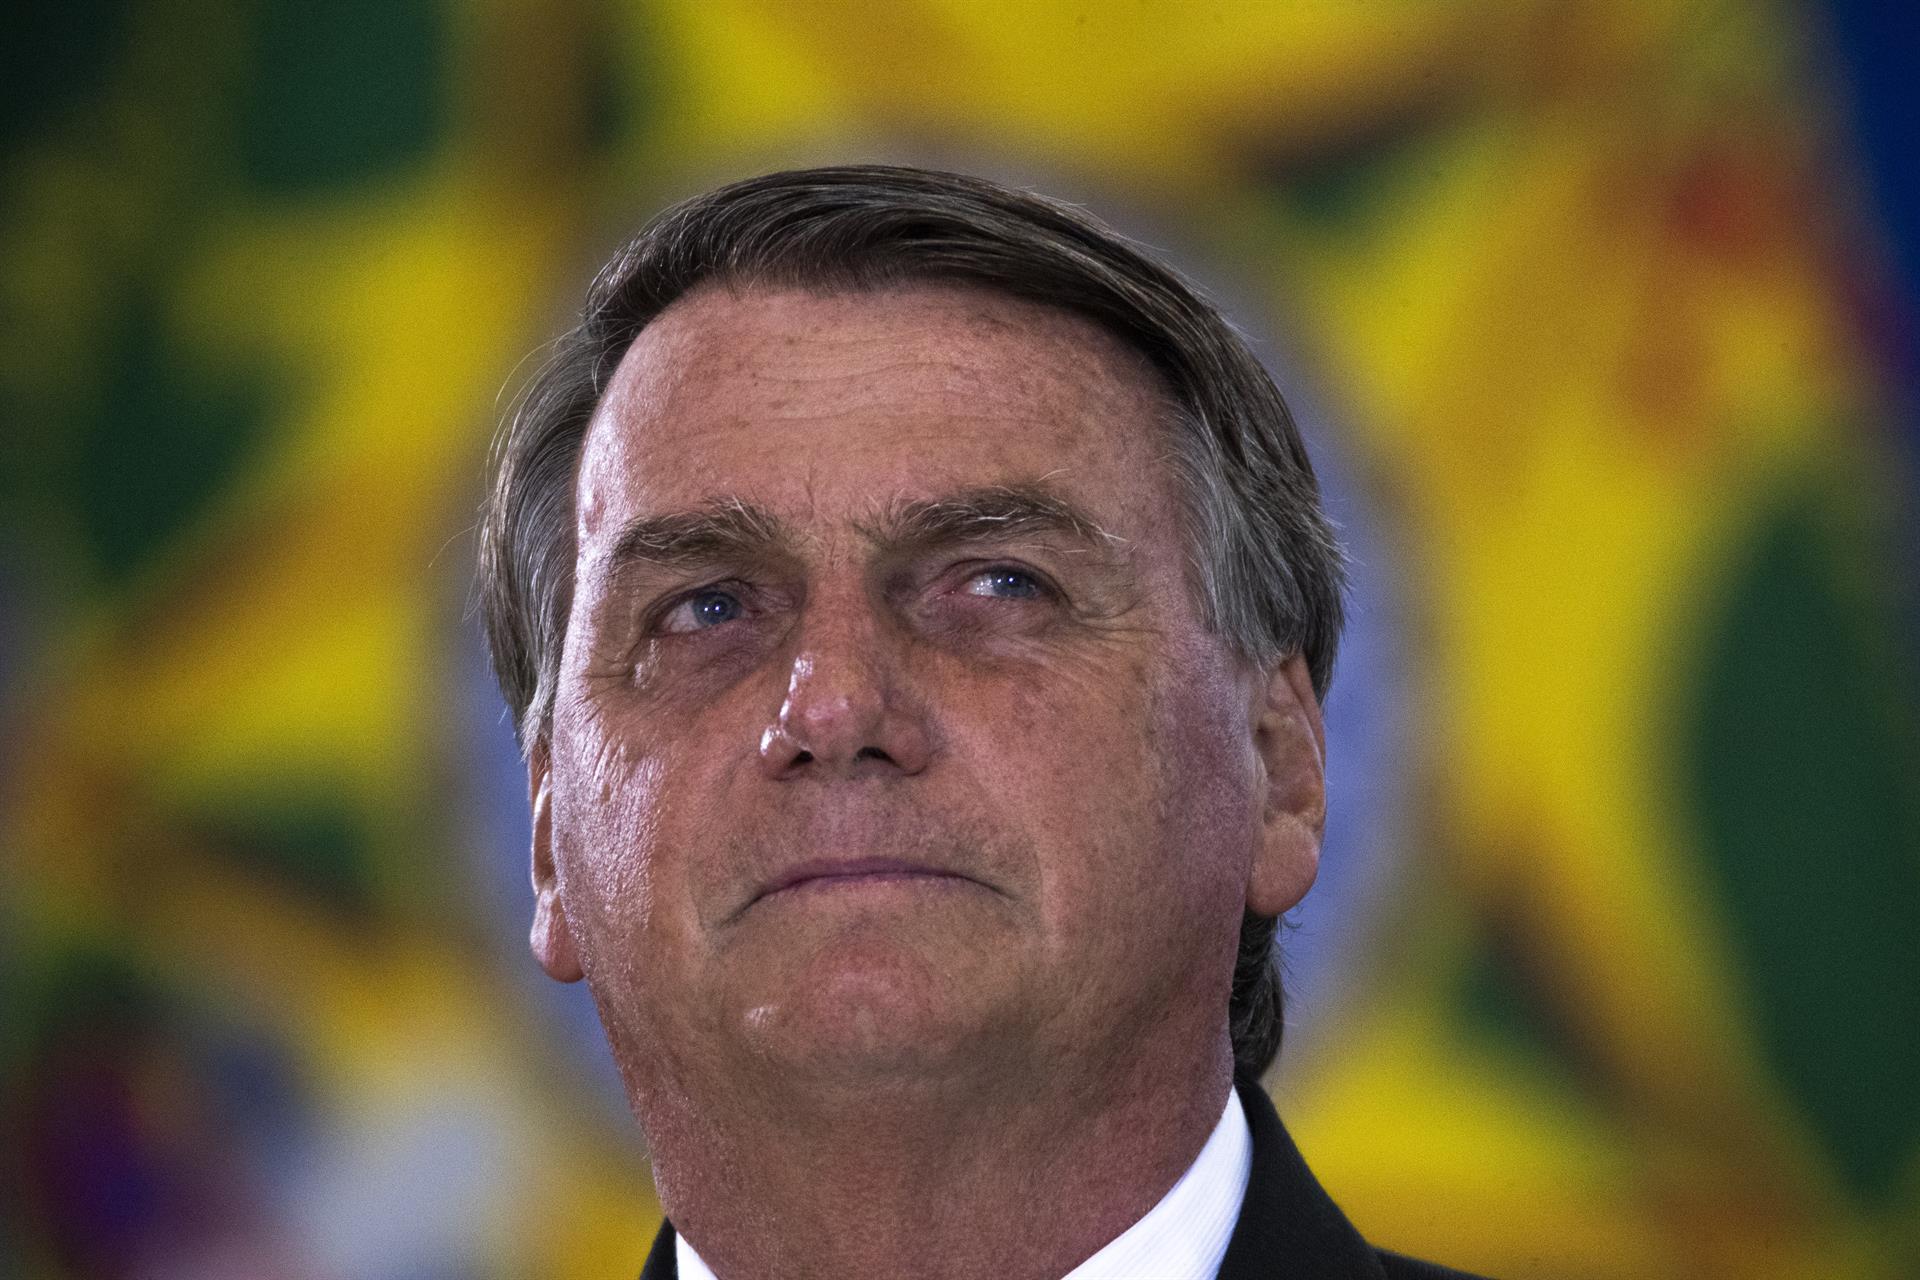 BRA126. BRASÍLIA (BRASIL), 05/04/2022. - El presidente de Brasil, Jair Bolsonaro, participa este martes en el Palacio do Planalto de una Ceremonia de Felicitación a los Oficiales Generales ascendidos, en Brasilia (Brasil) EFE/ Joédson Alves.